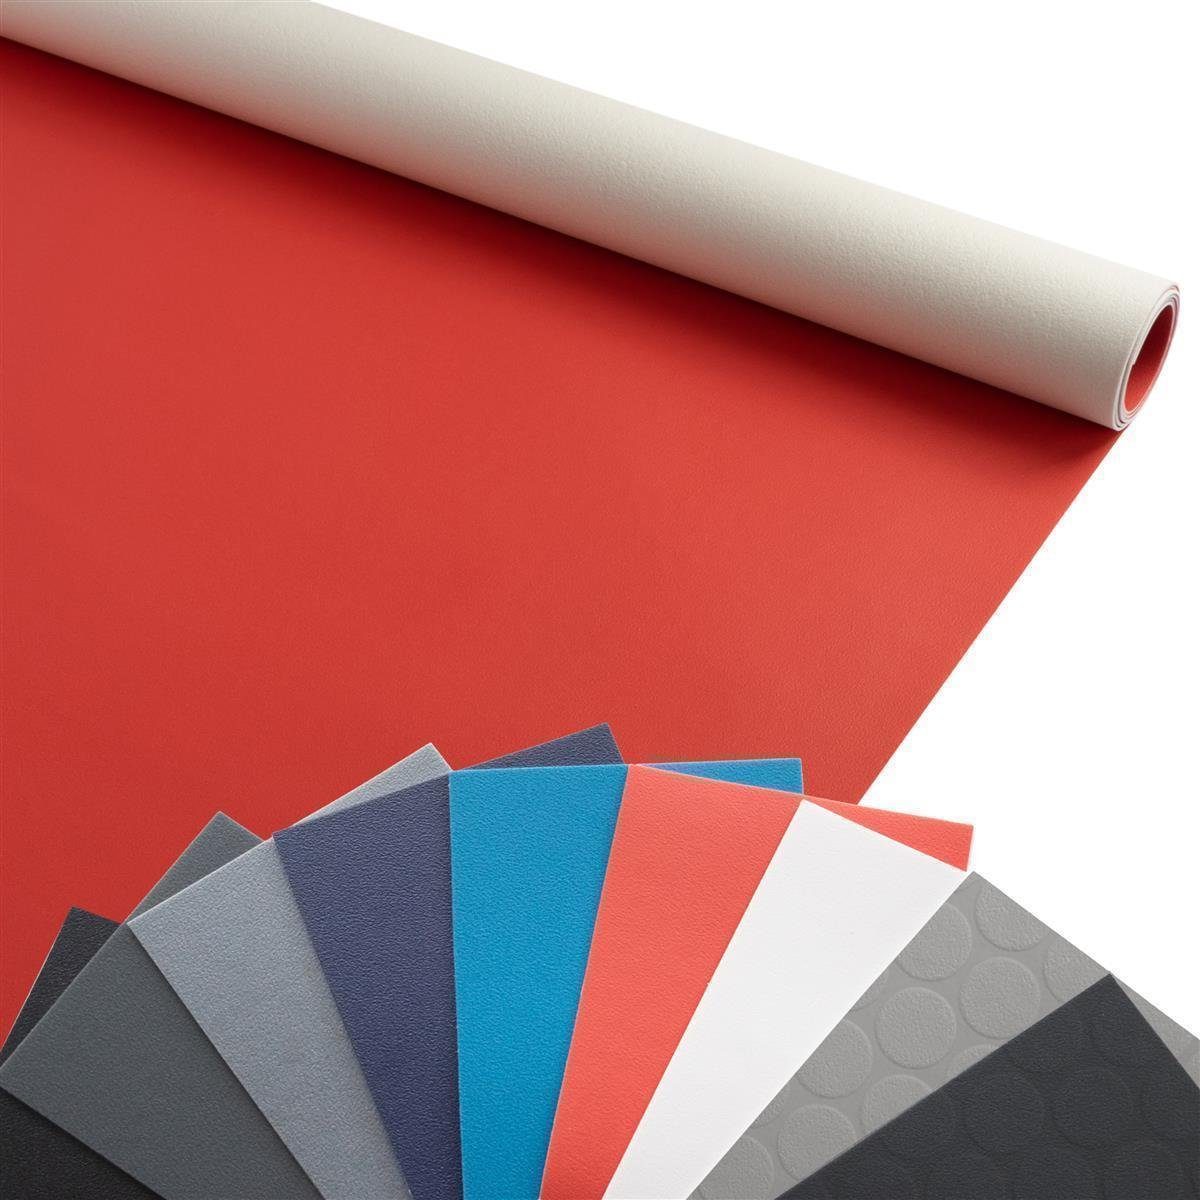 Primaflor-Ideen in Textil Vinylboden PVC ADRIA, Starke Nutzschicht